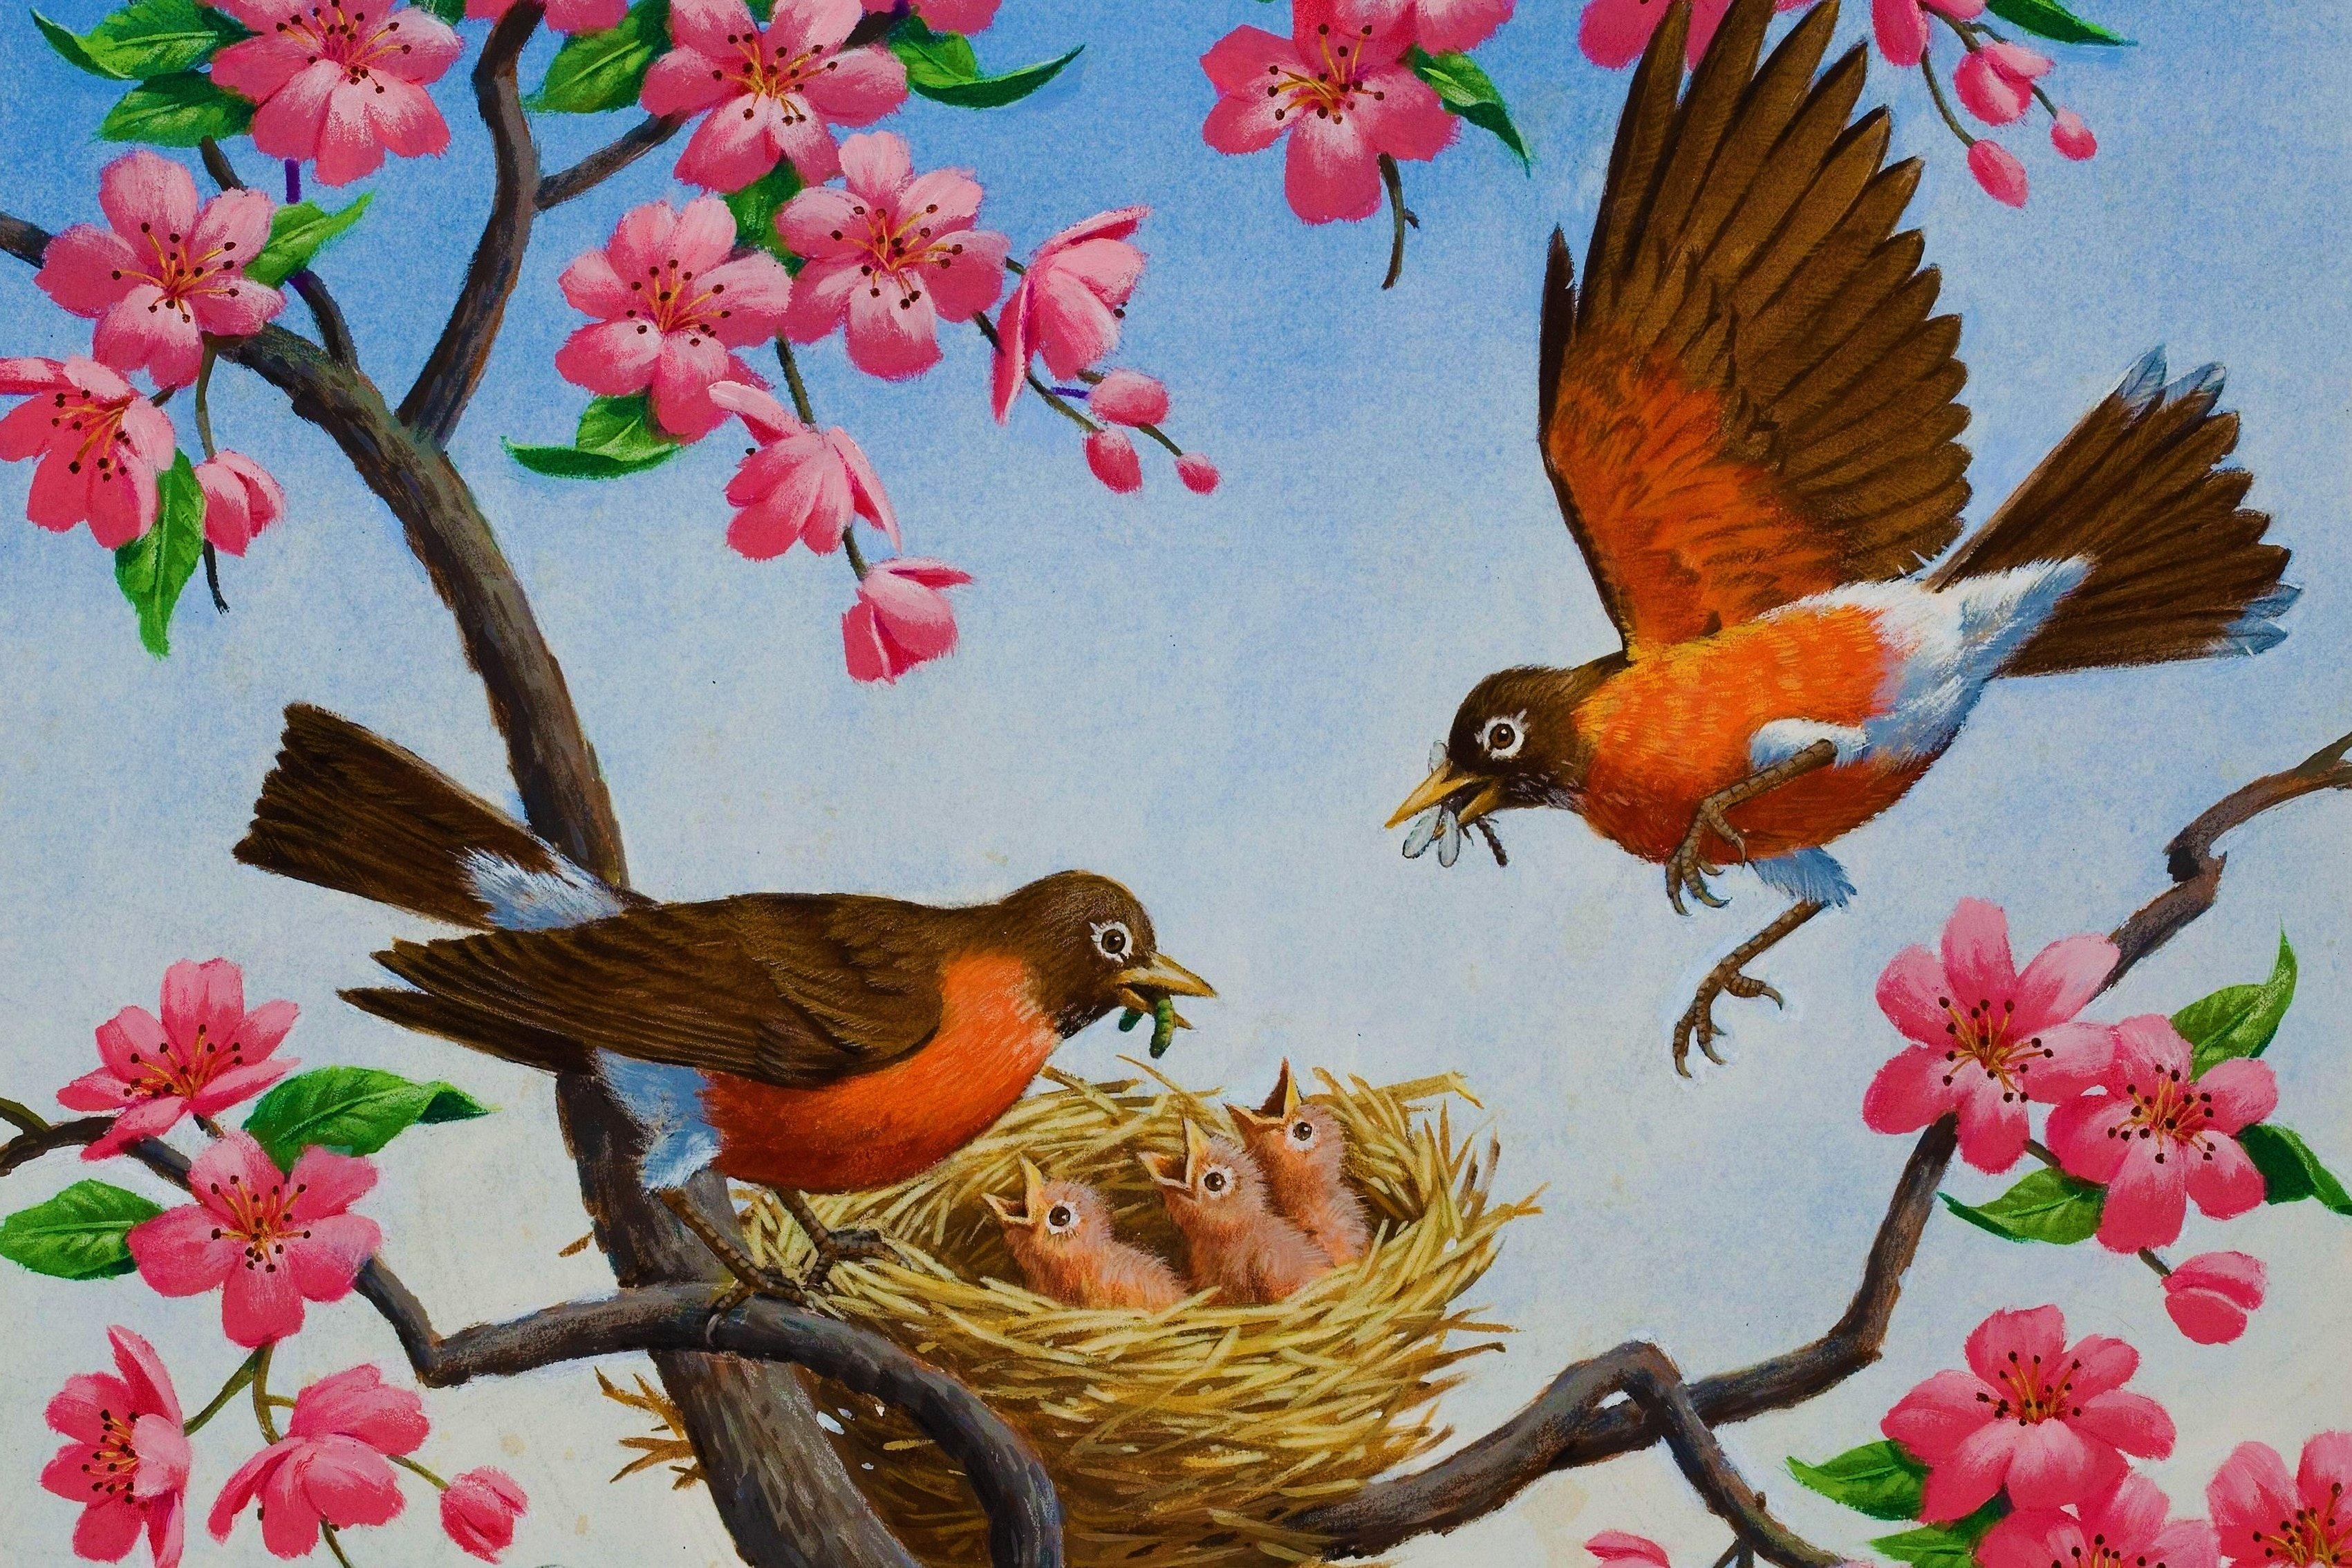 Загляните в мир птиц весны: фото для скачивания | Весенние птицы Фото  №543720 скачать